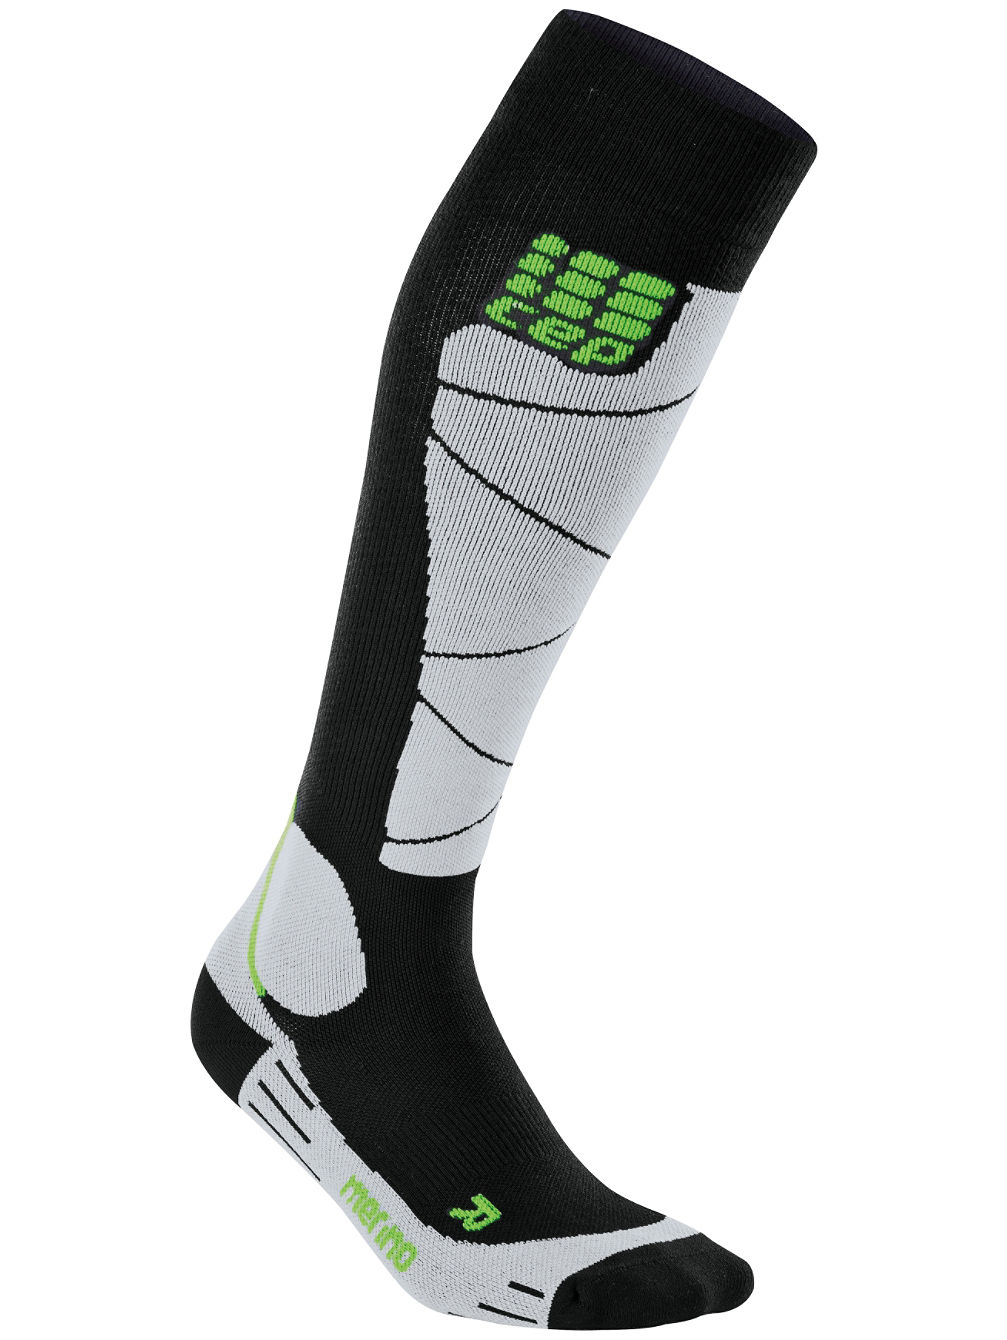 Pro+ Ski Merino Socks